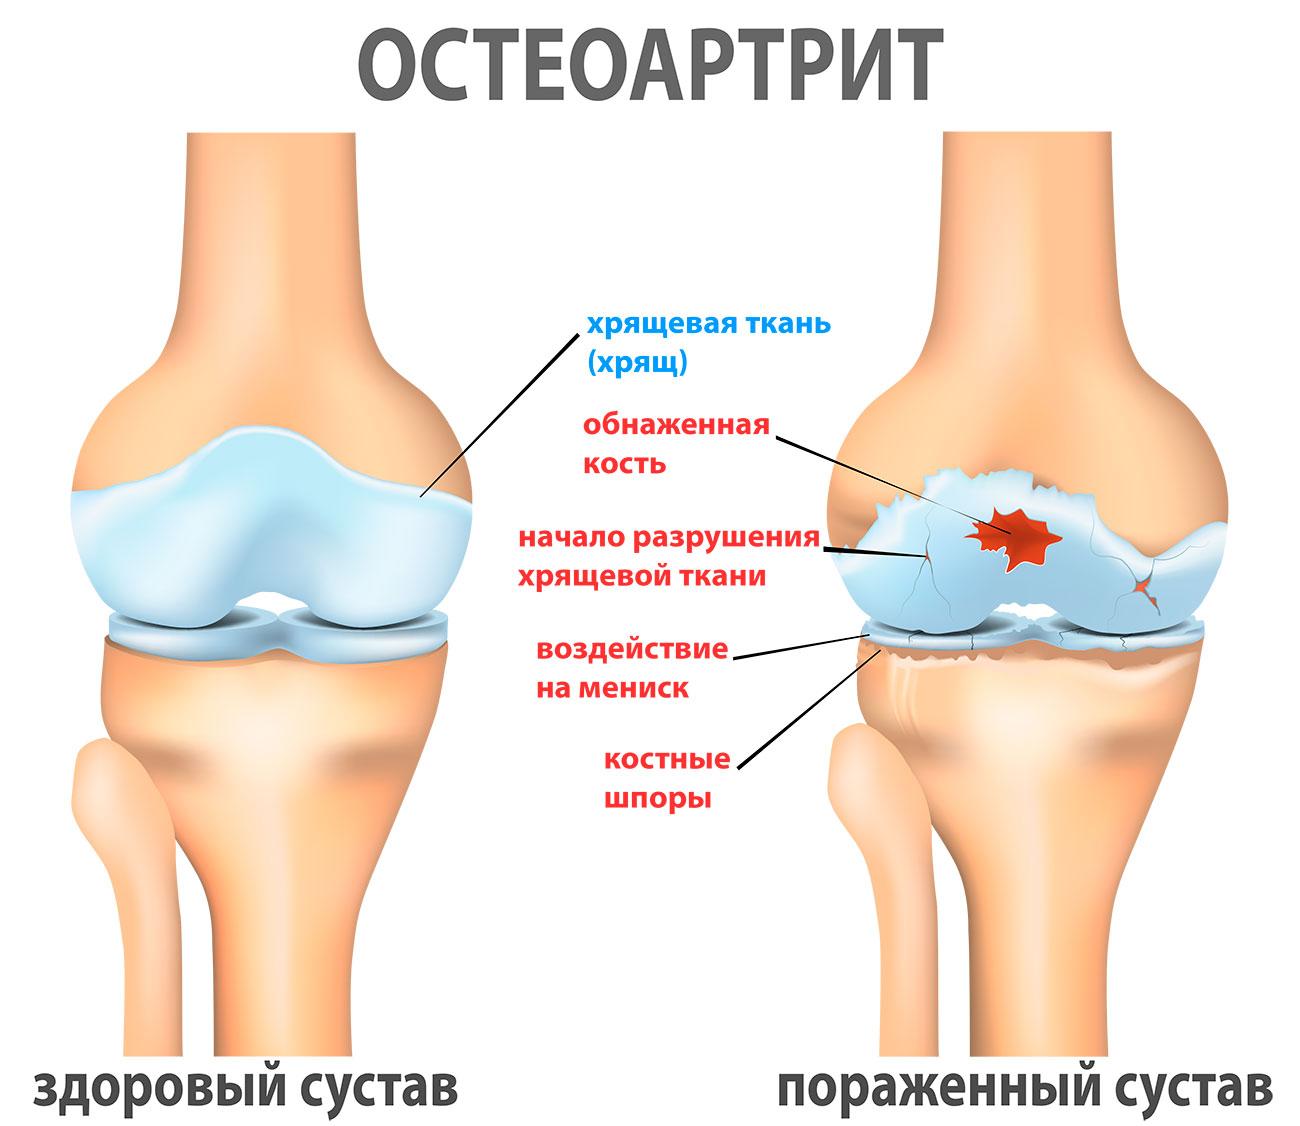 Остеоартрит картинка здоровый сустав и пораженный сустав